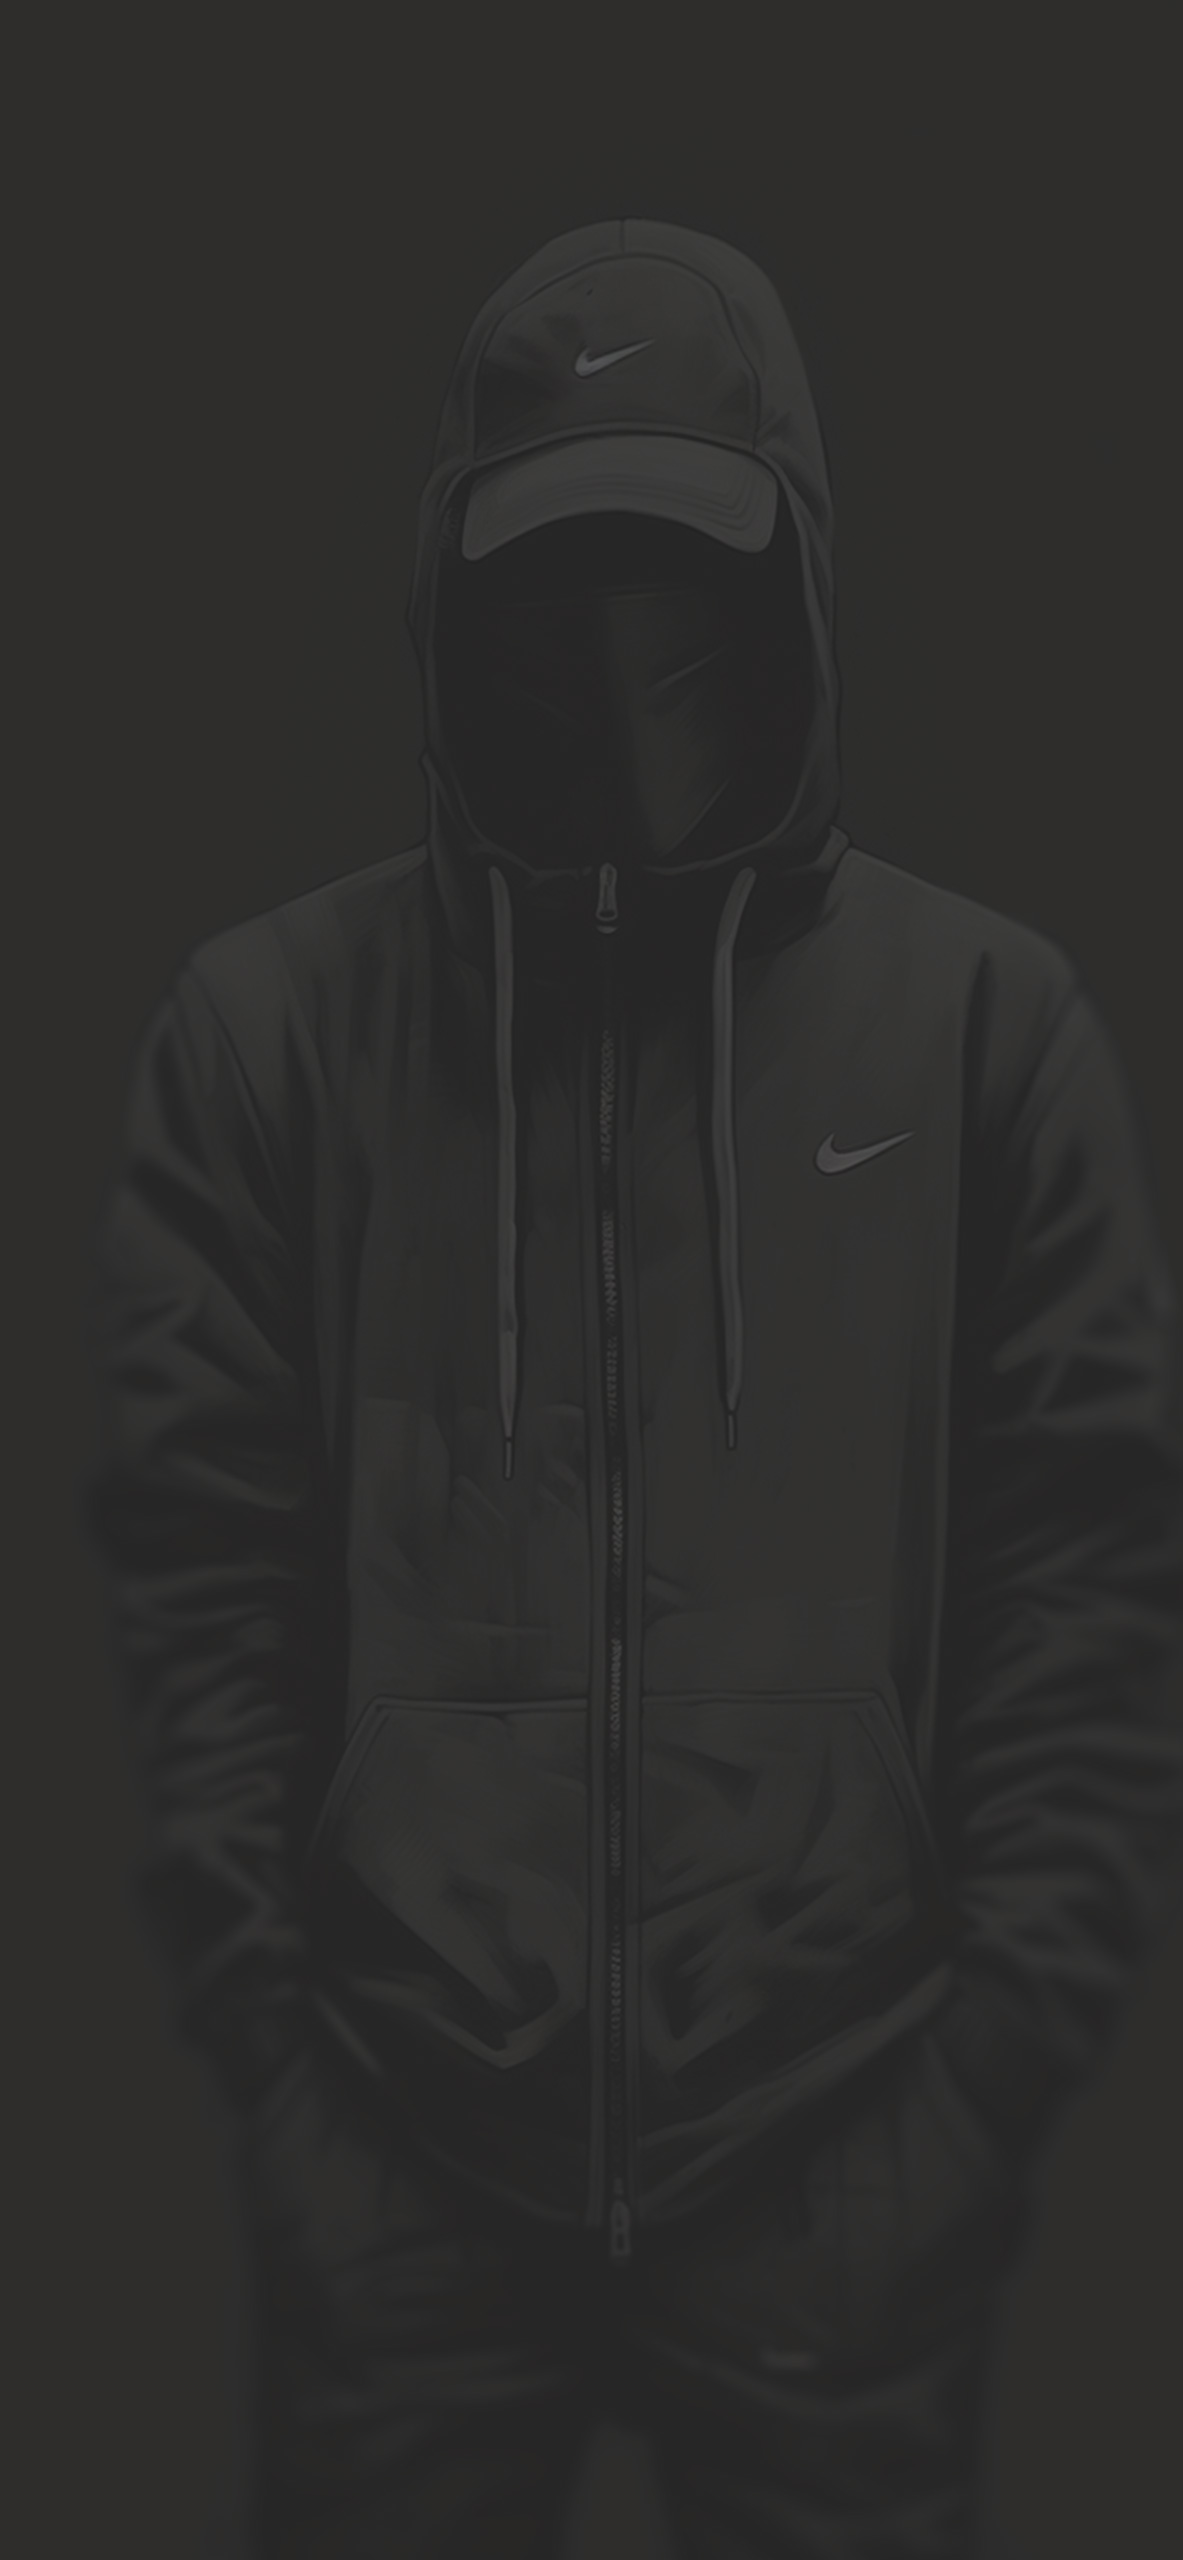 Nike Streetwear Look Grey Wallpaper